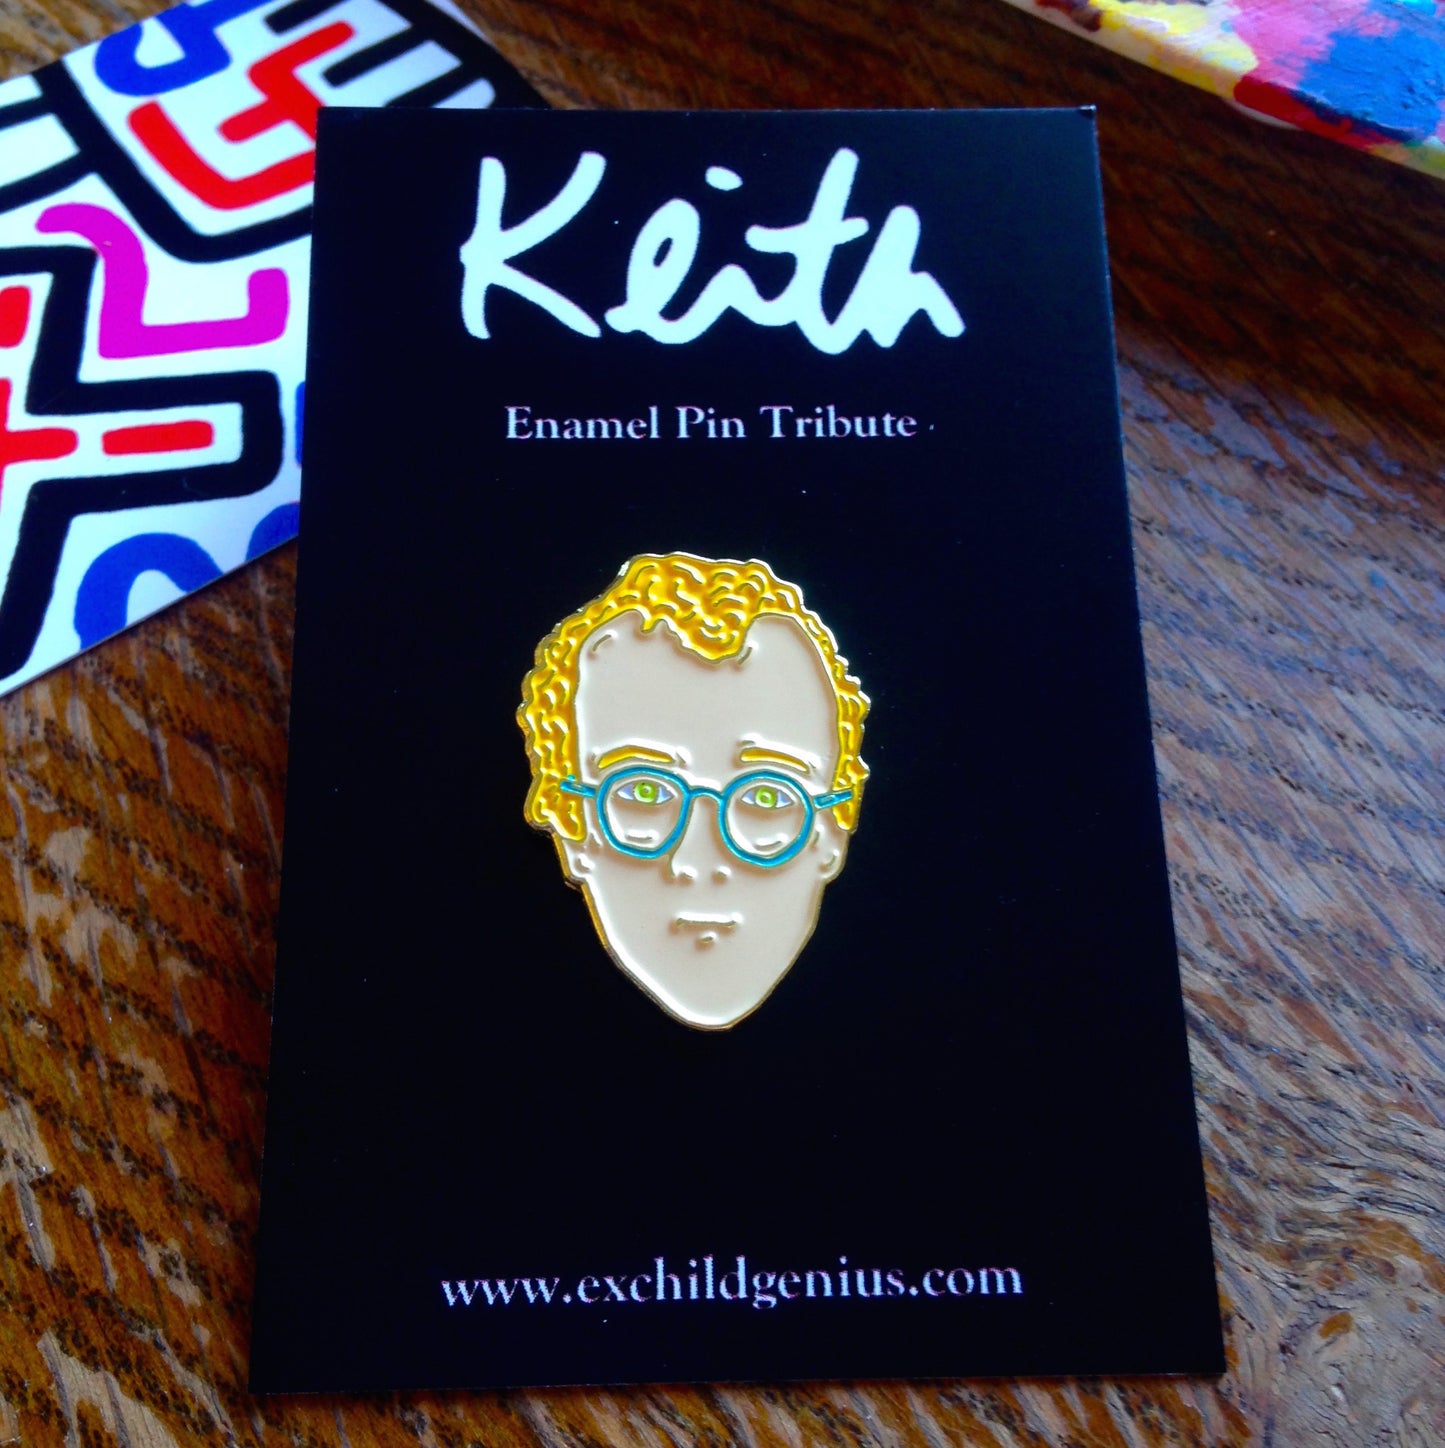 Keith Haring Enamel Pin Badge Art History